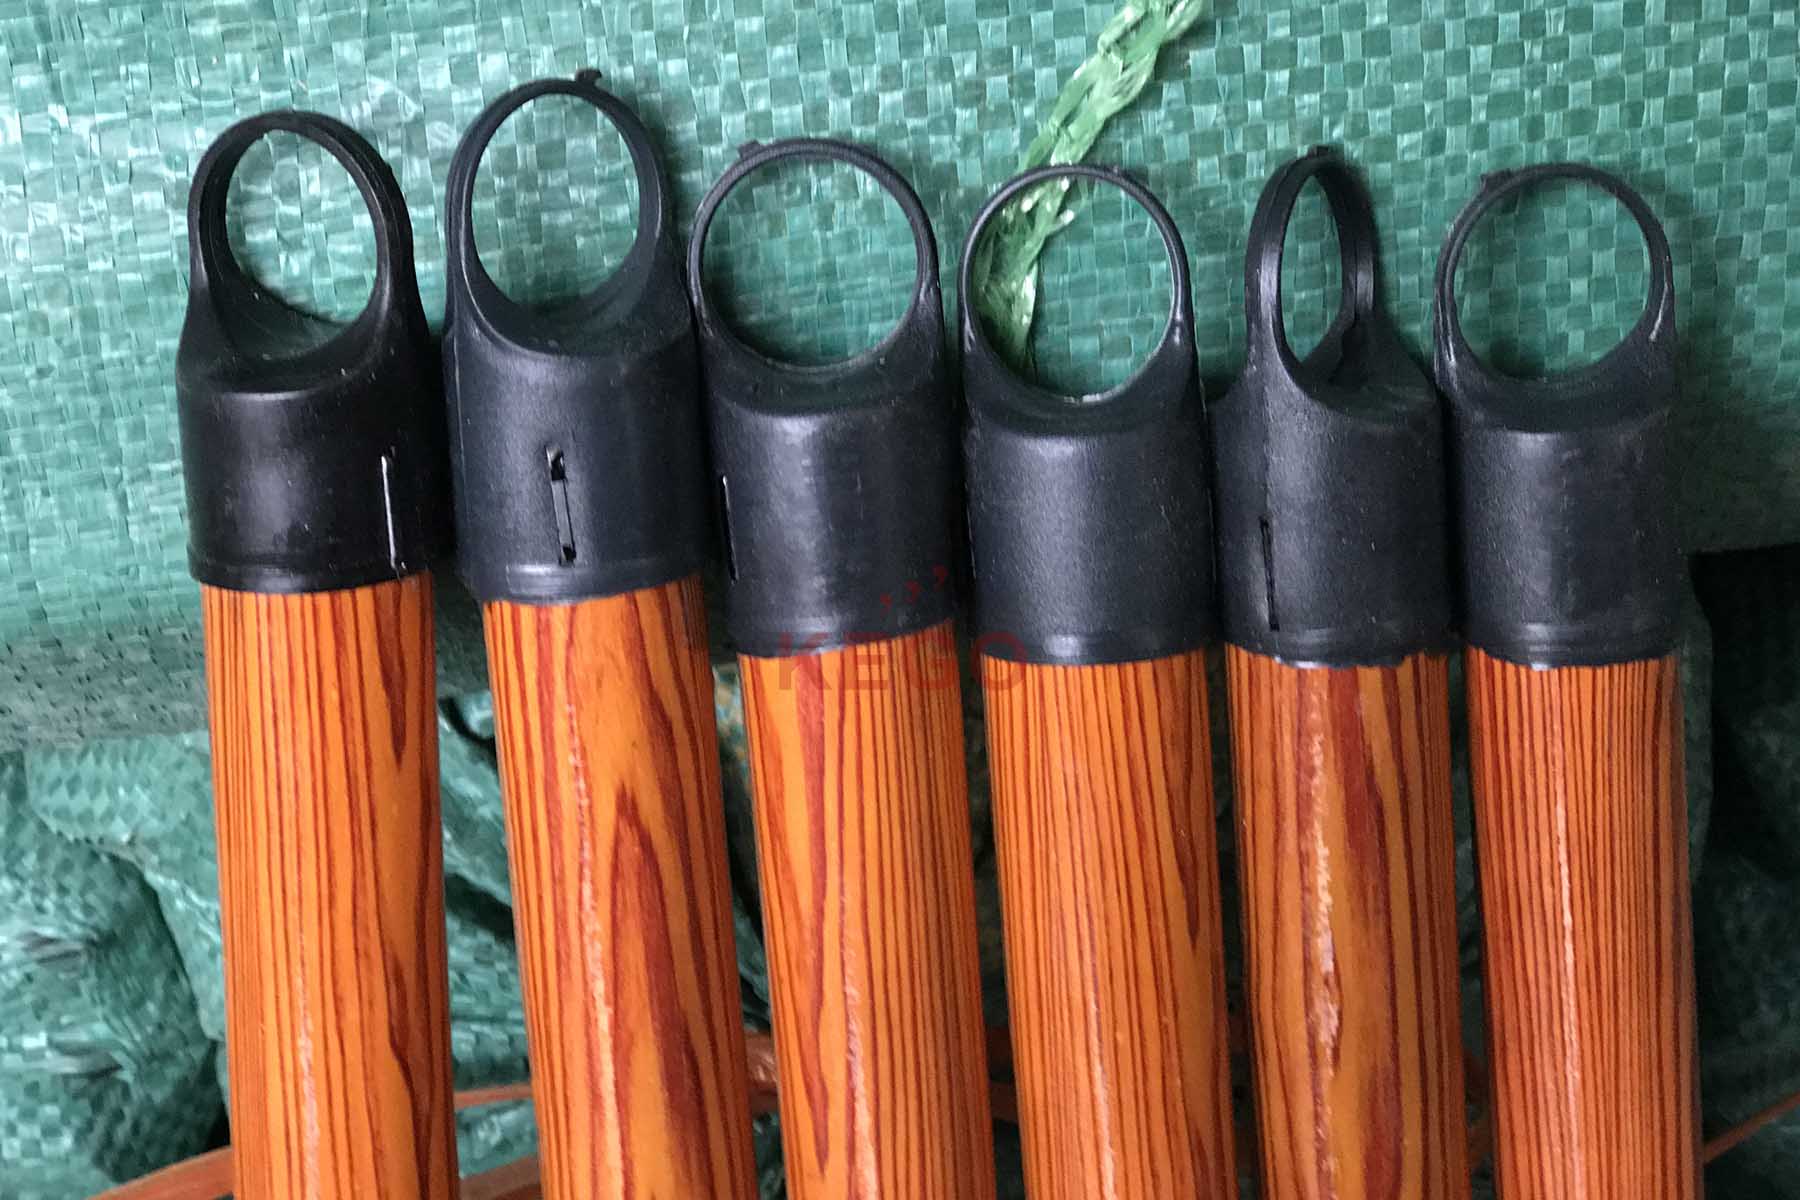 https://kego.com.vn/wp-content/uploads/2015/09/wooden-broom-handle-kego-5.jpg